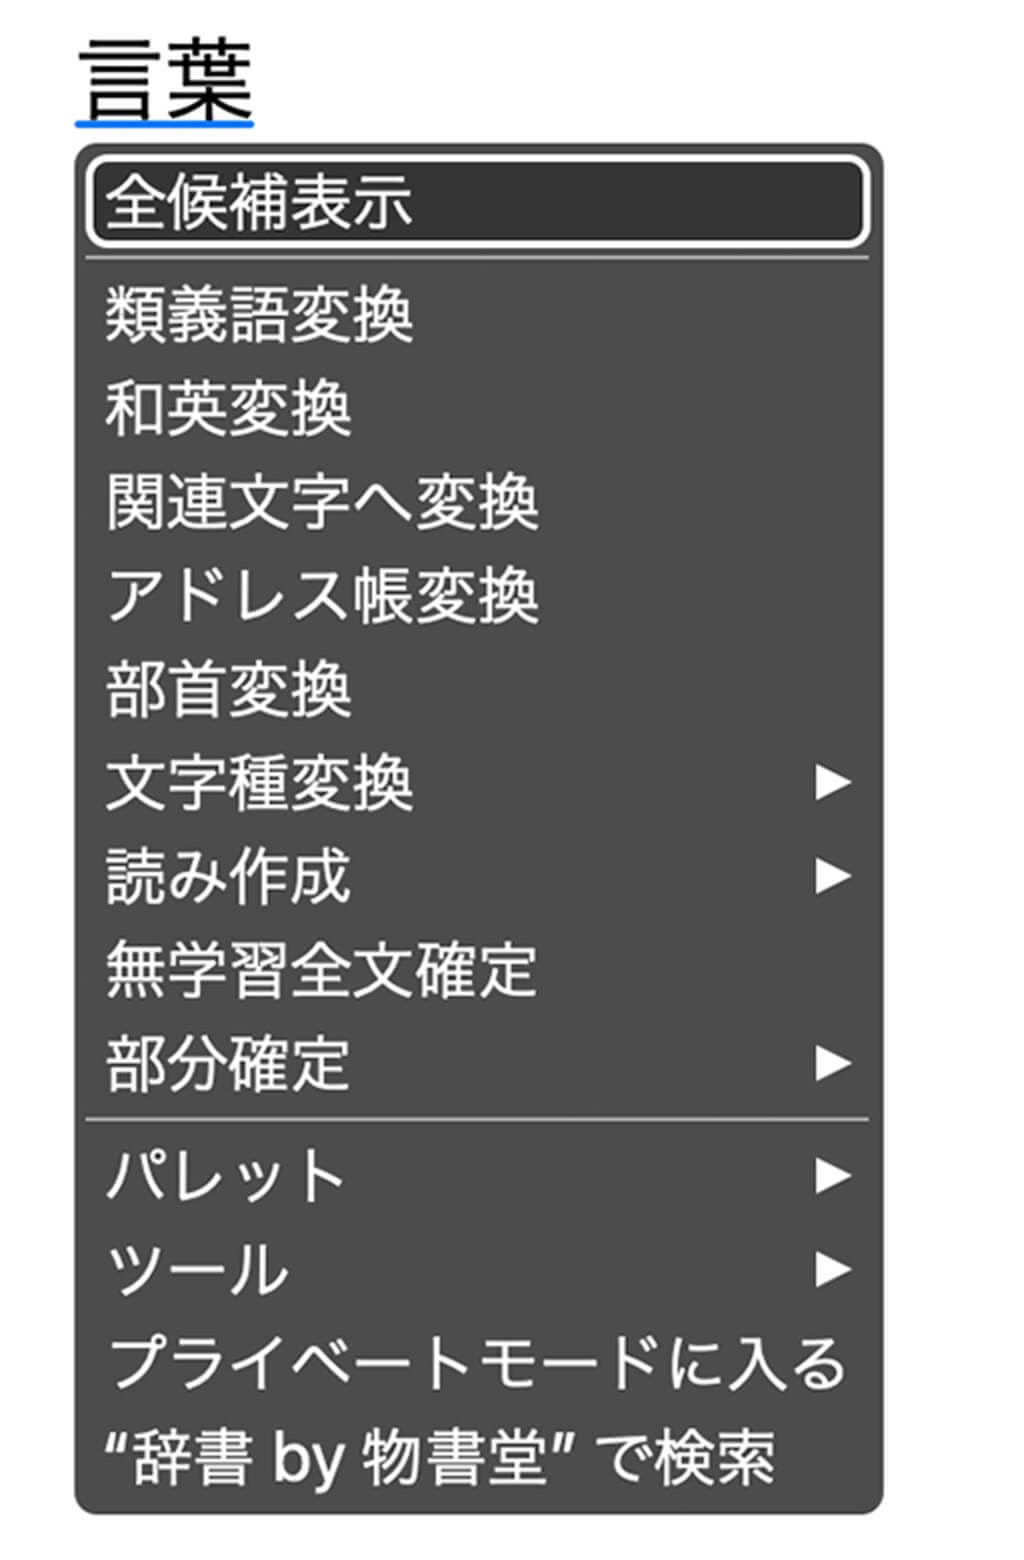 物書堂、macOS向け日本語入力プログラムの最新版｢かわせみ4｣を販売開始